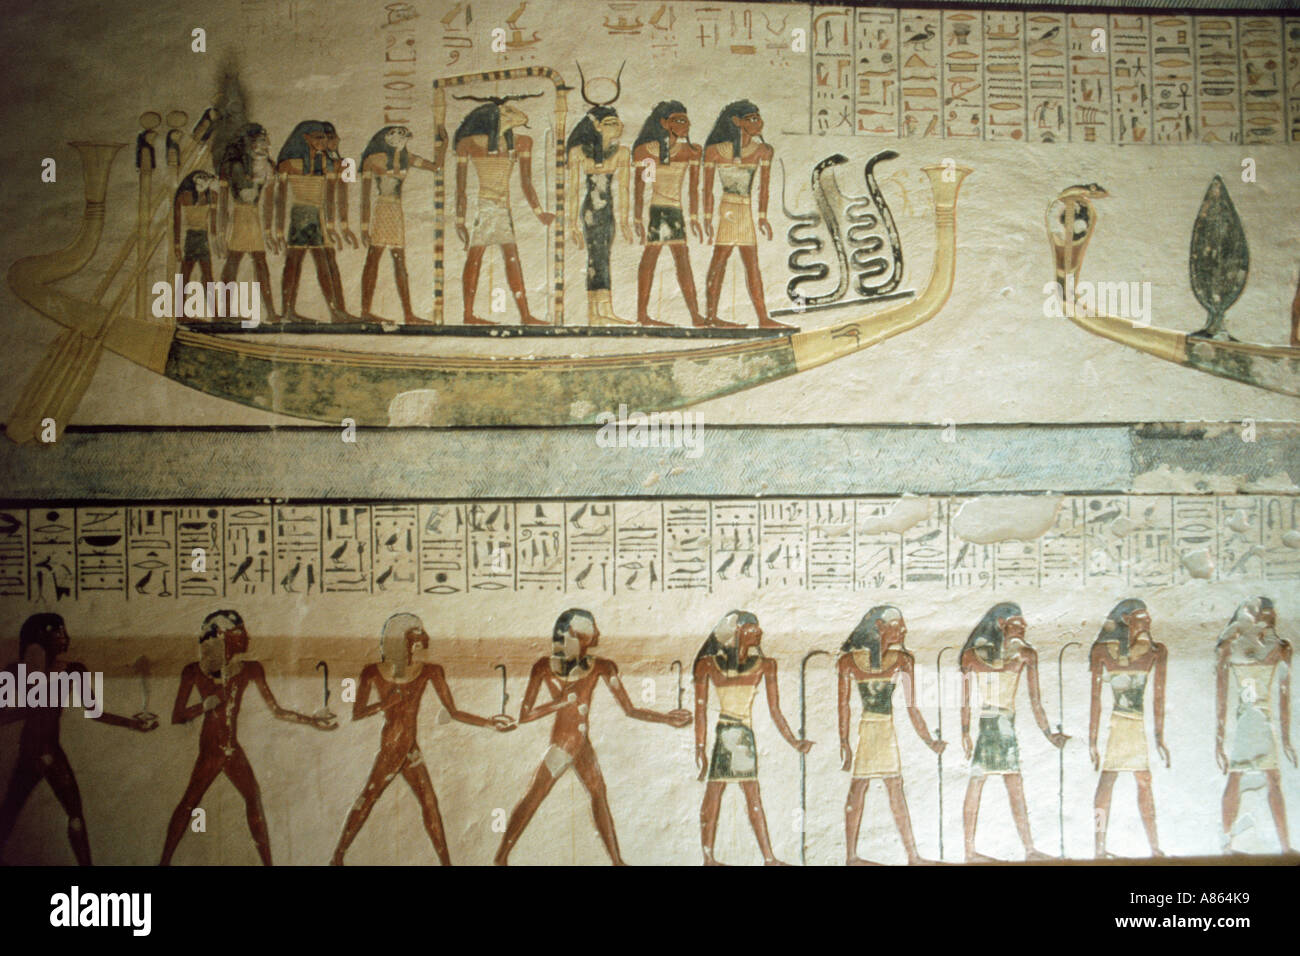 Mur décoré de figures et d'hiéroglyphes inscrits dans la tombe de Ramsès IX à la Vallée des Rois à Louxor Egypte Banque D'Images